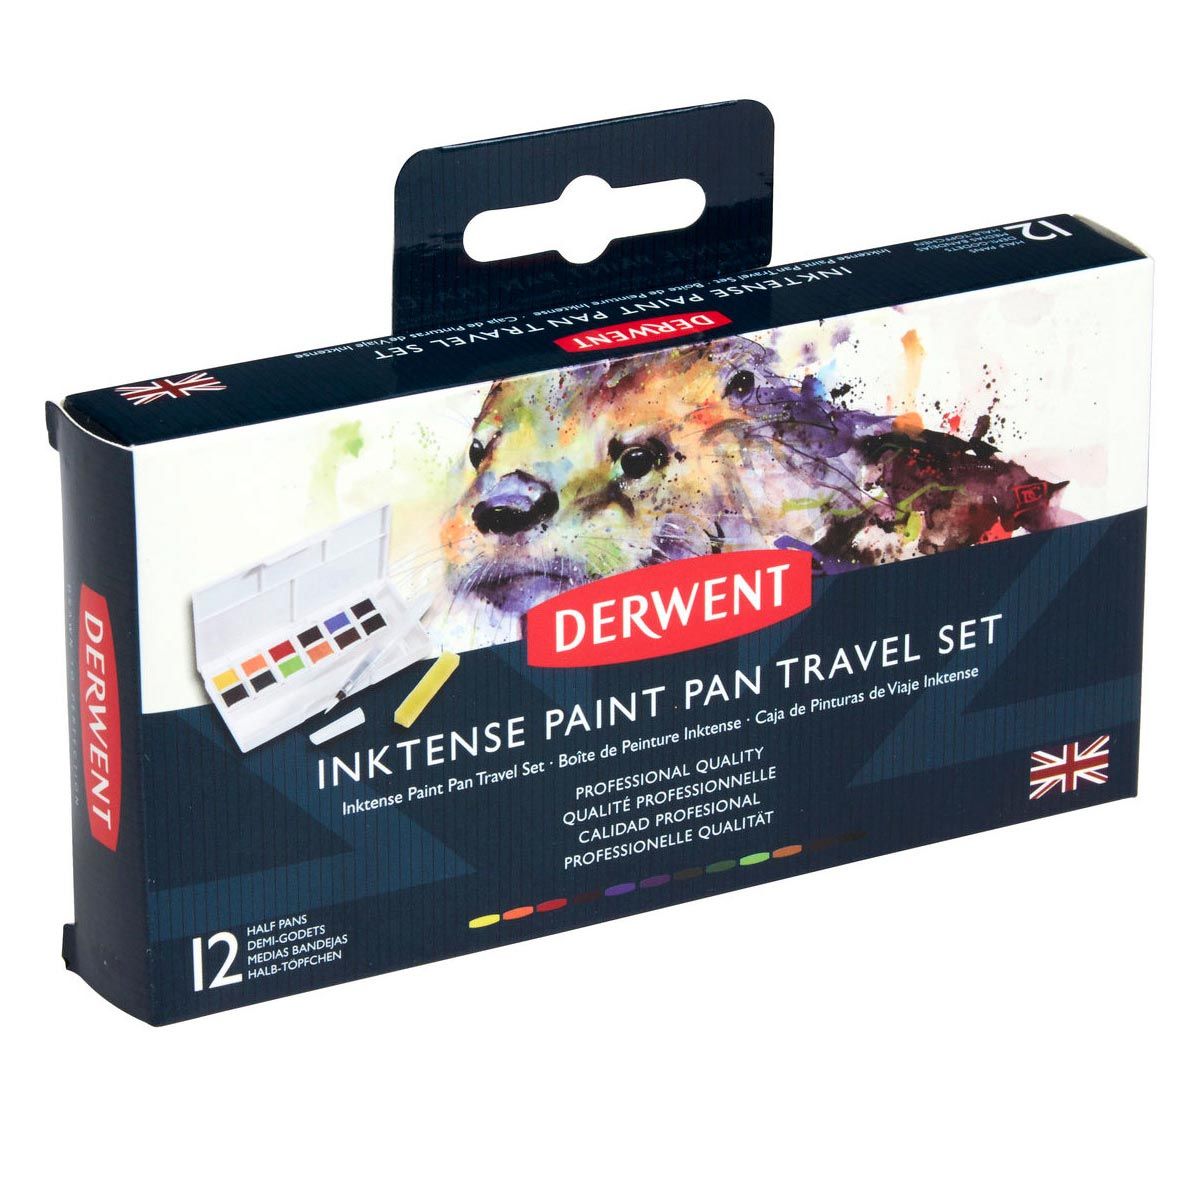 Derwent Inktense Paint 12 Pan Travel Set